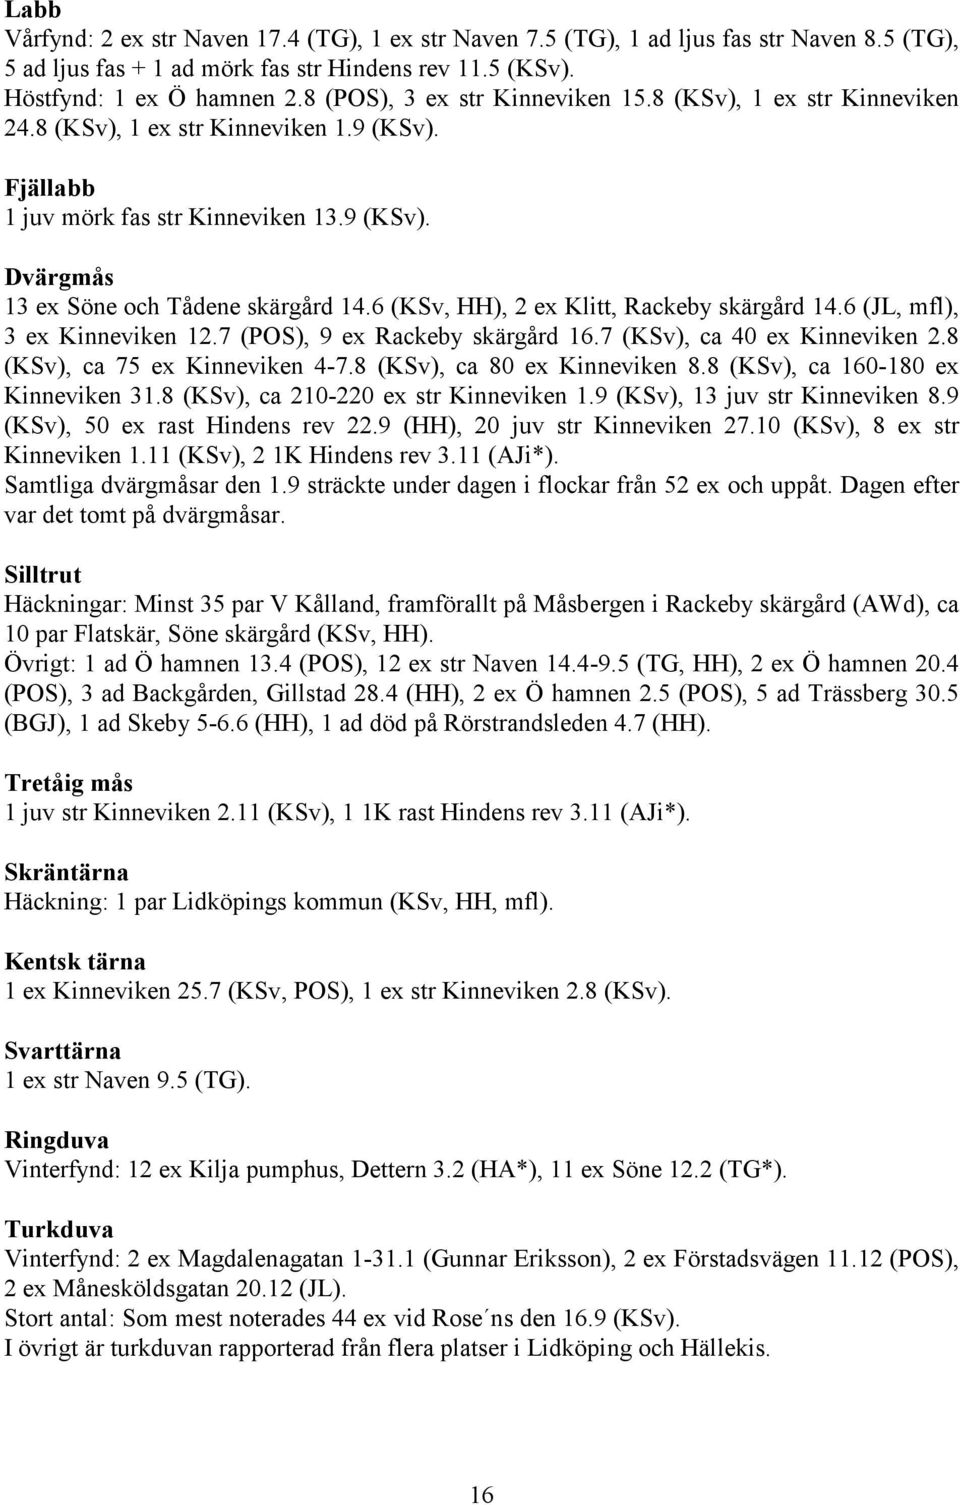 6 (KSv, HH), 2 ex Klitt, Rackeby skärgård 14.6 (JL, mfl), 3 ex Kinneviken 12.7 (POS), 9 ex Rackeby skärgård 16.7 (KSv), ca 40 ex Kinneviken 2.8 (KSv), ca 75 ex Kinneviken 4-7.